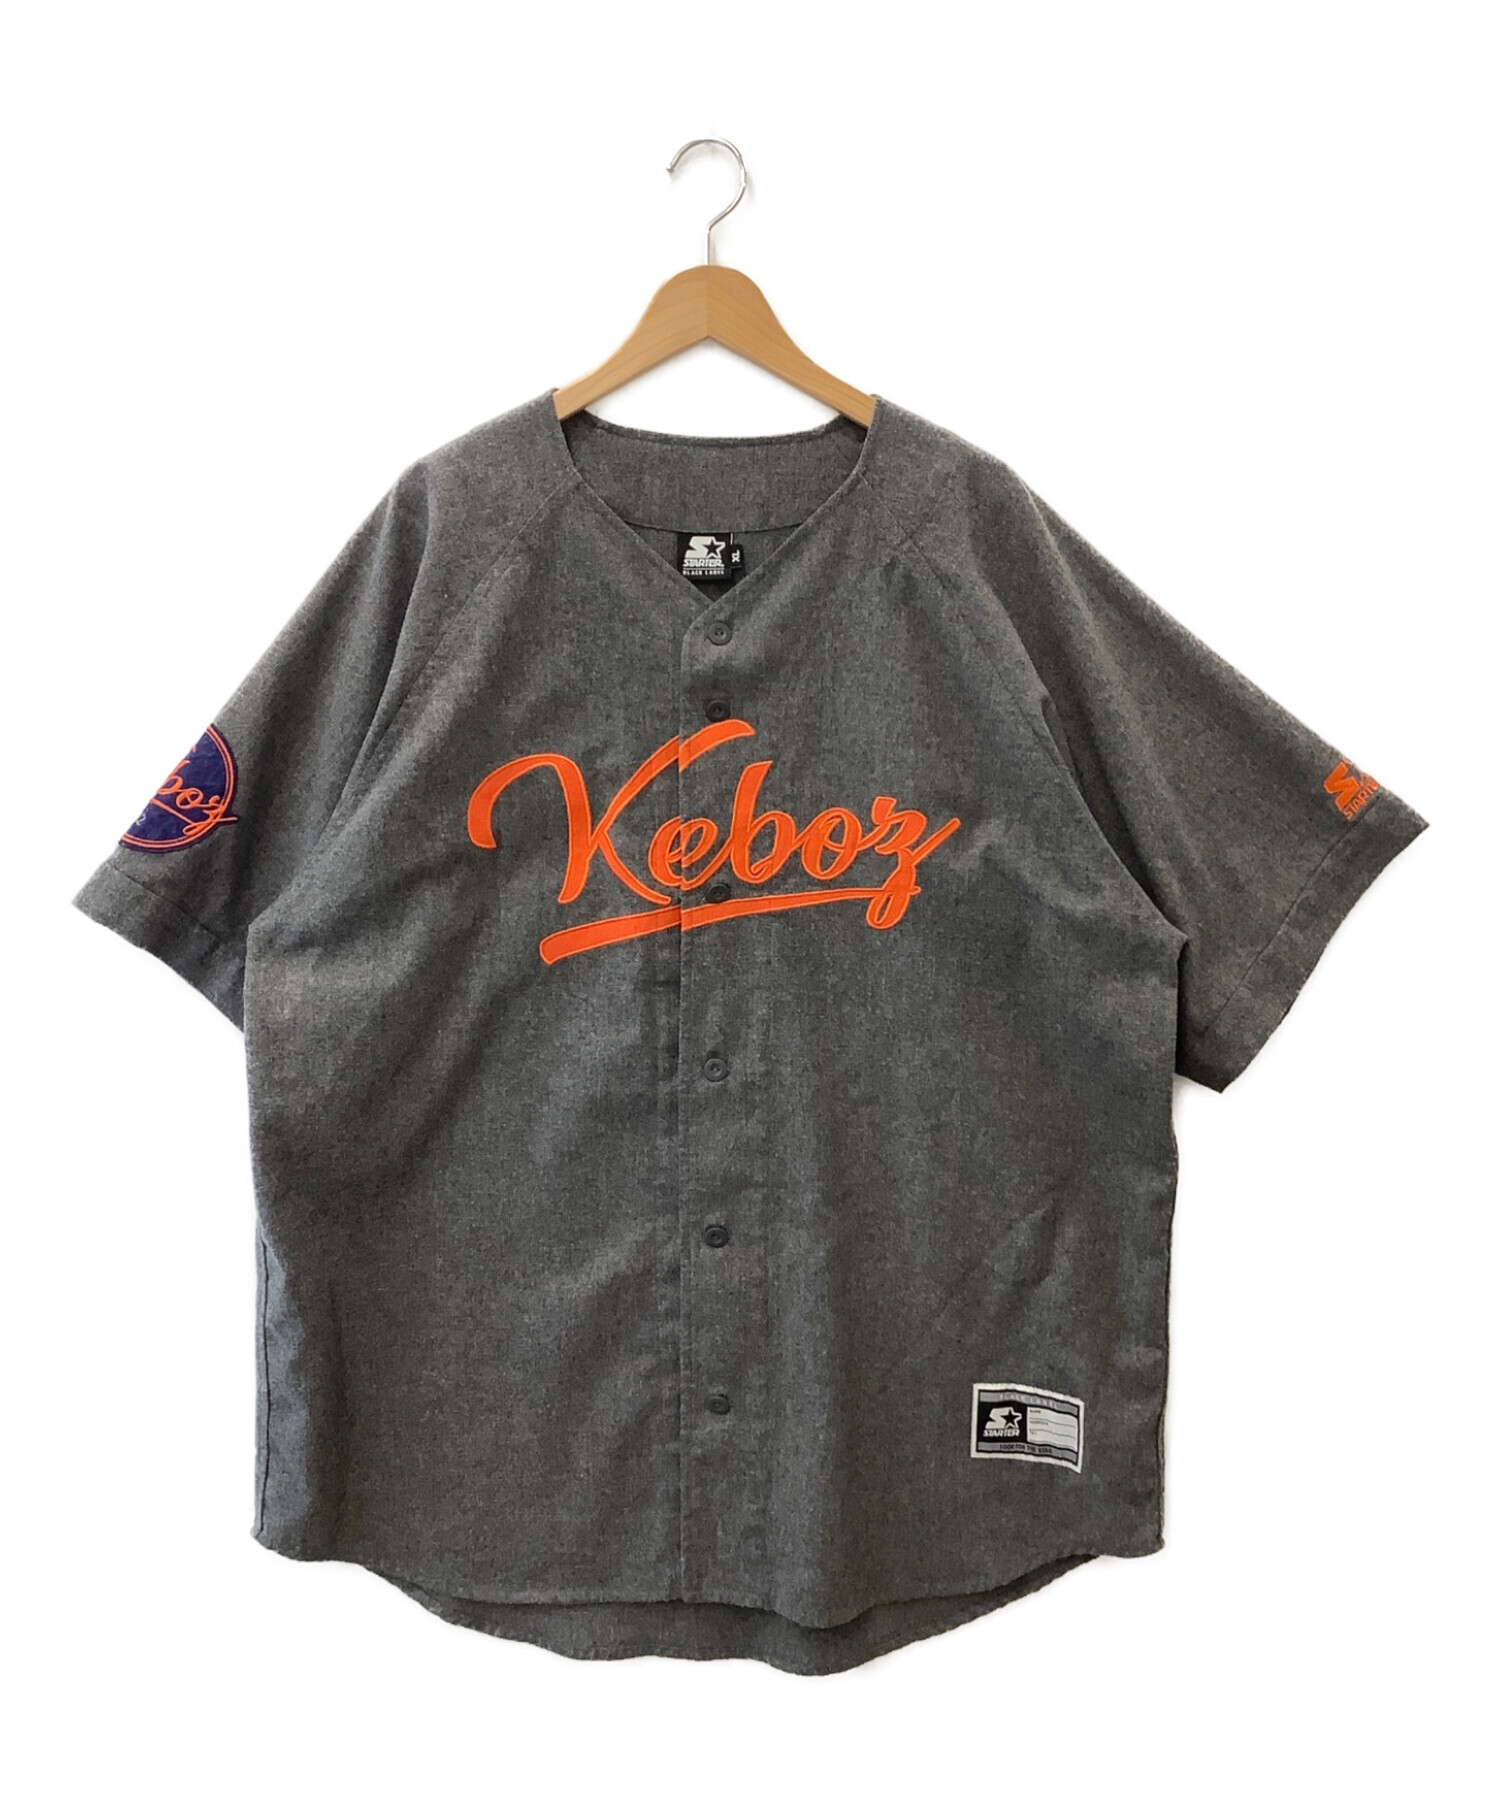 ゆうたkeboz ケボズ 初期 ベースボールシャツ サイズ L starter コラボ